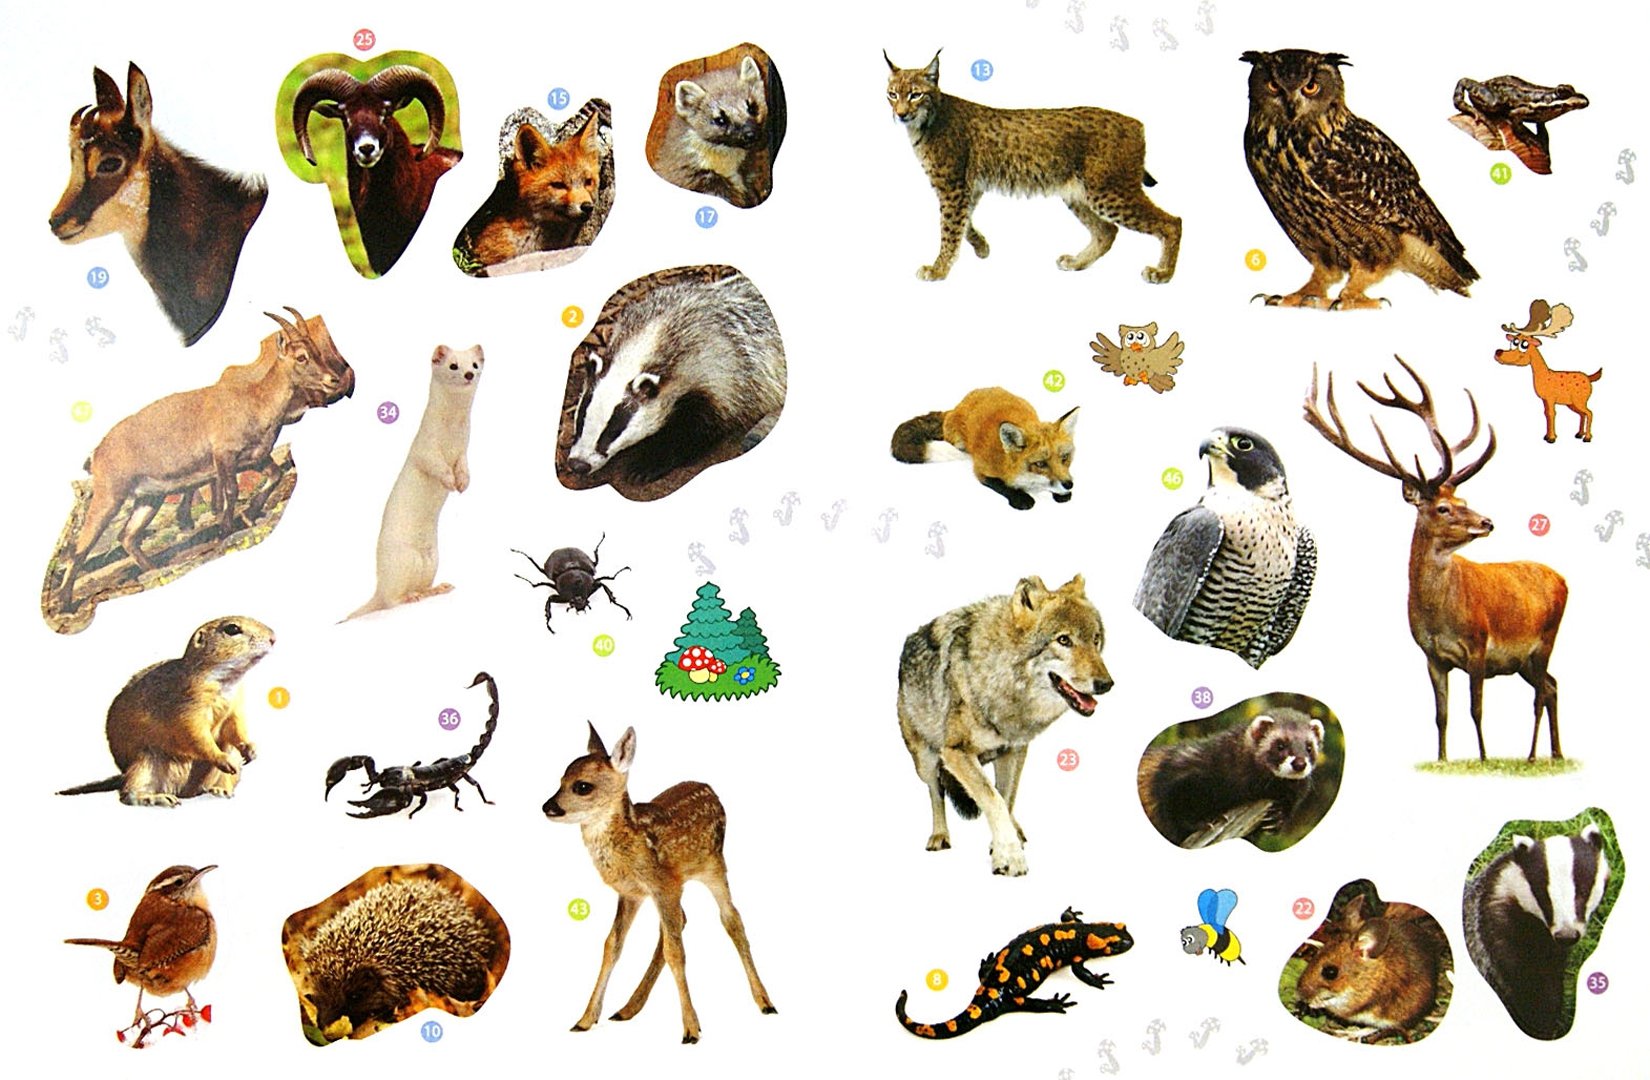 картинки диких животных россии